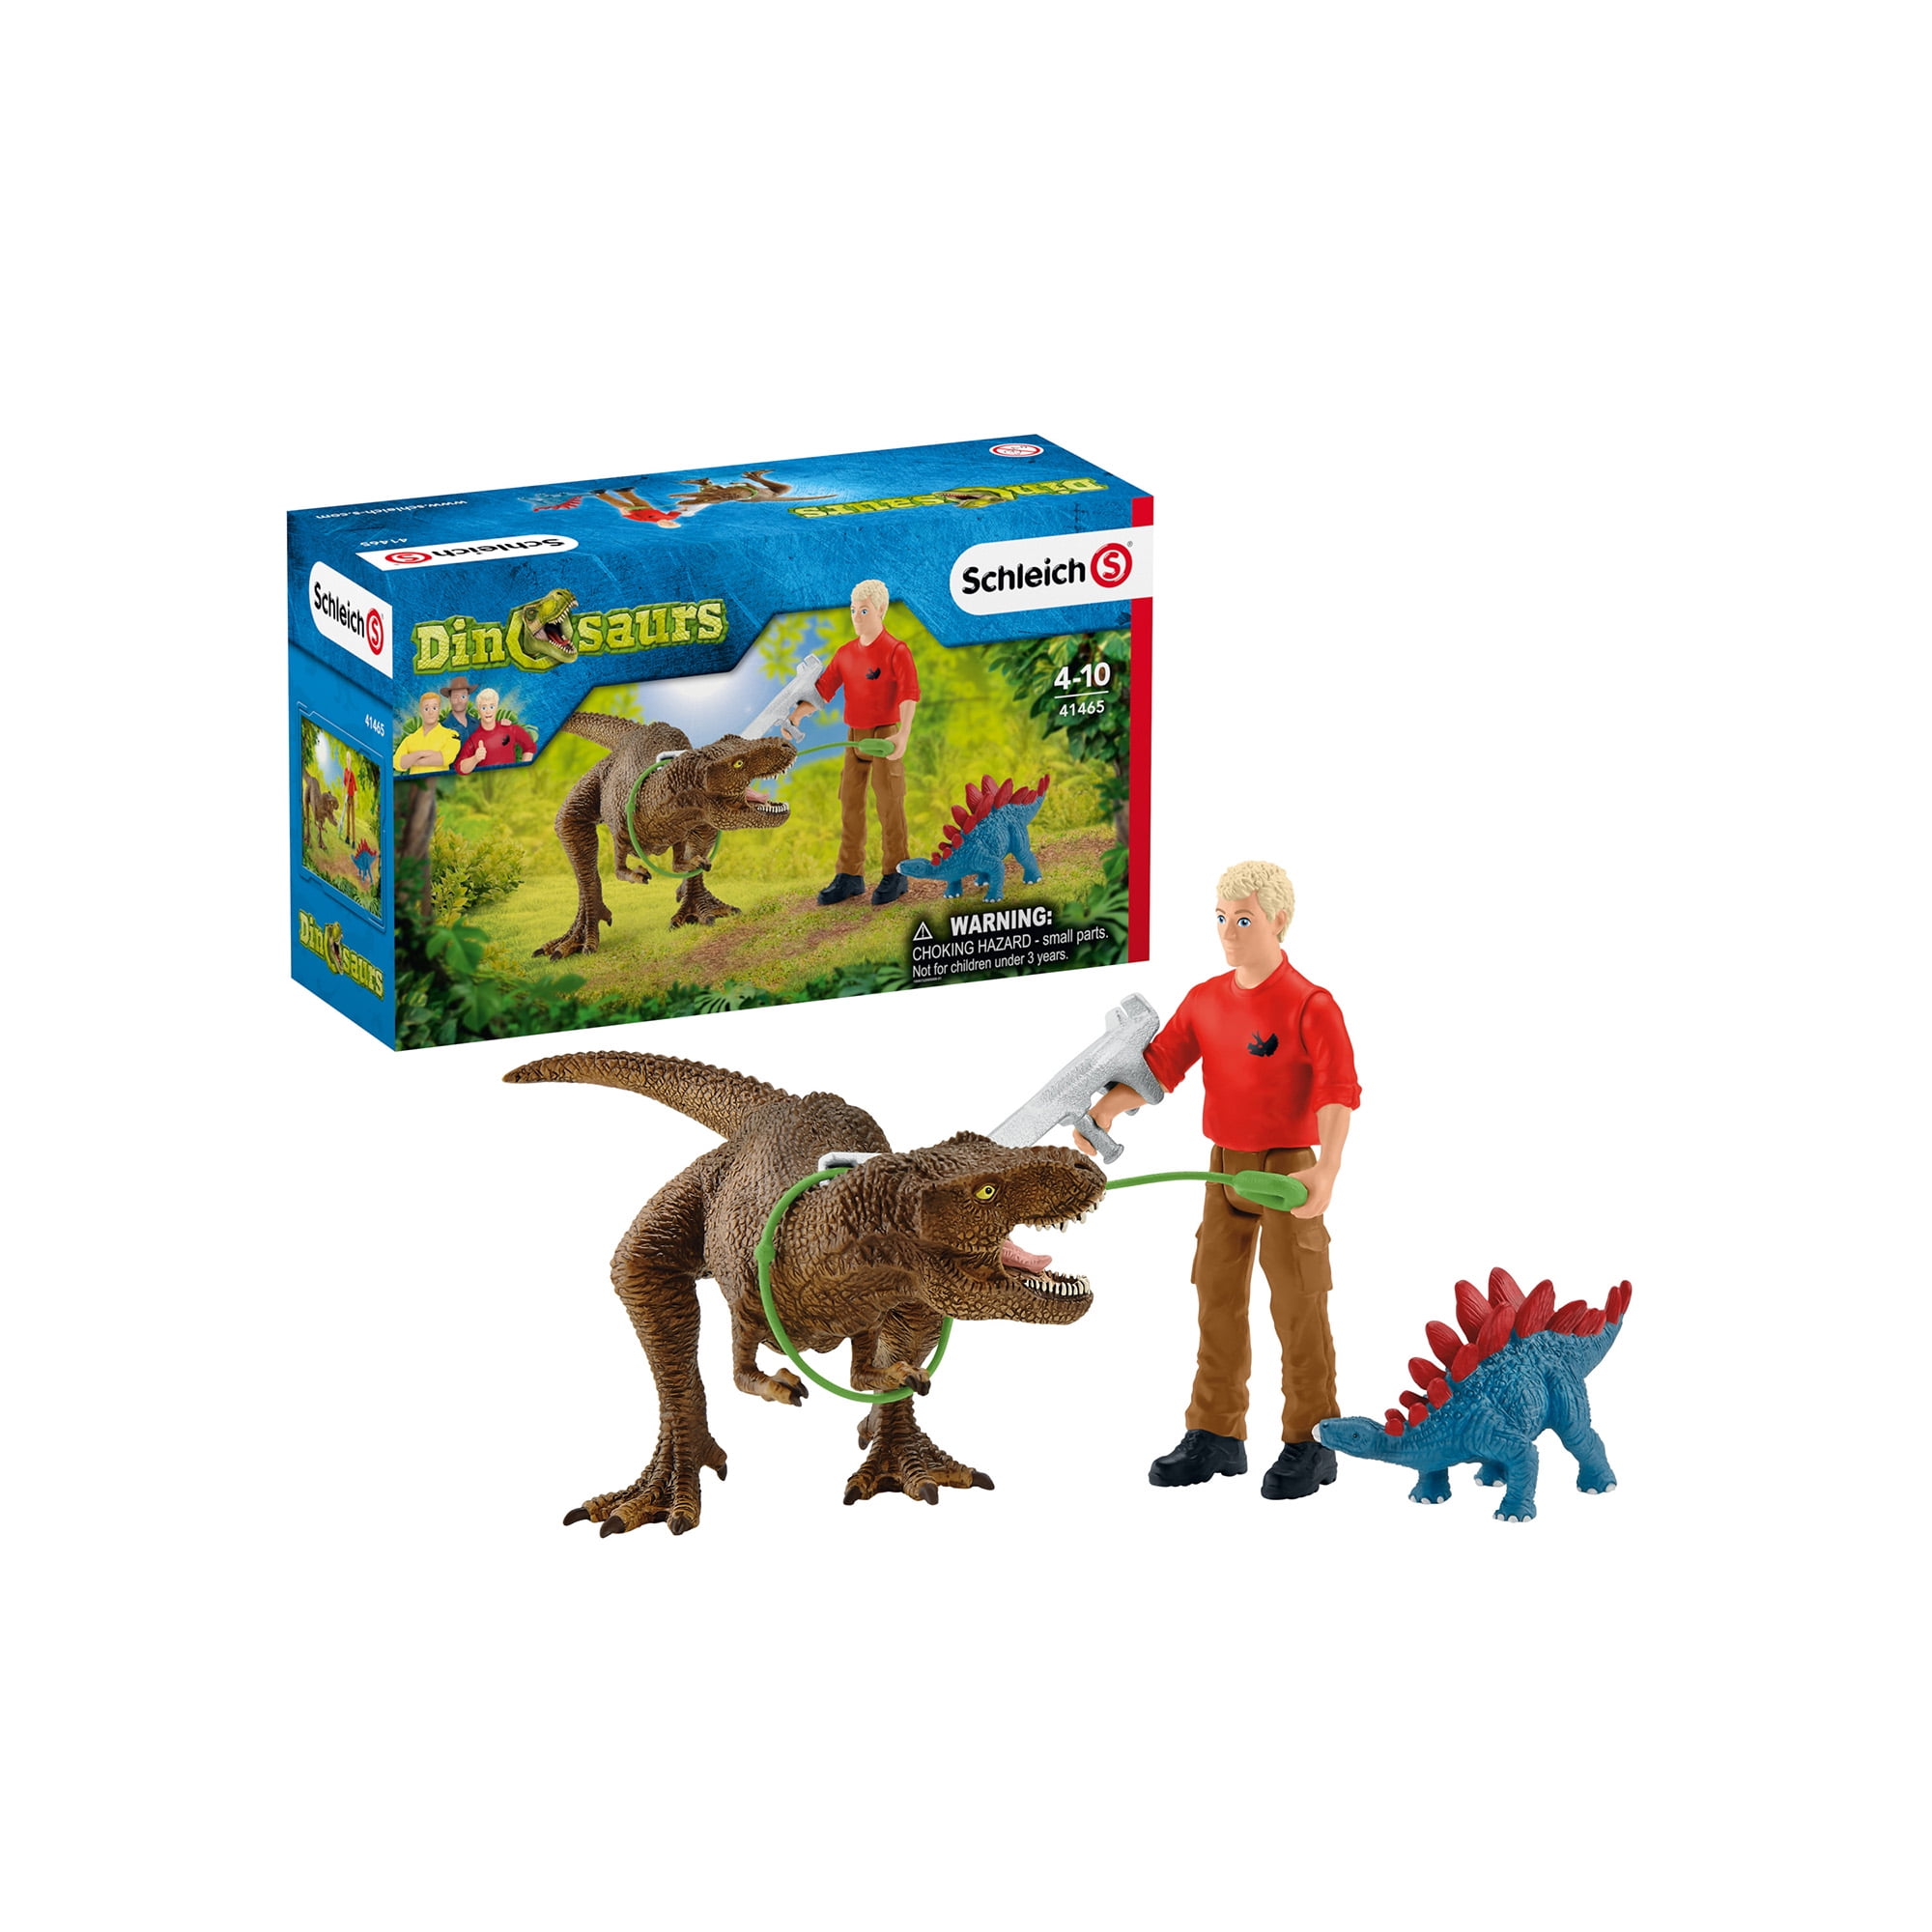 Schleich Dinosaurs Tyrannosaurus Rex Attack Toy Playset - Walmart.com